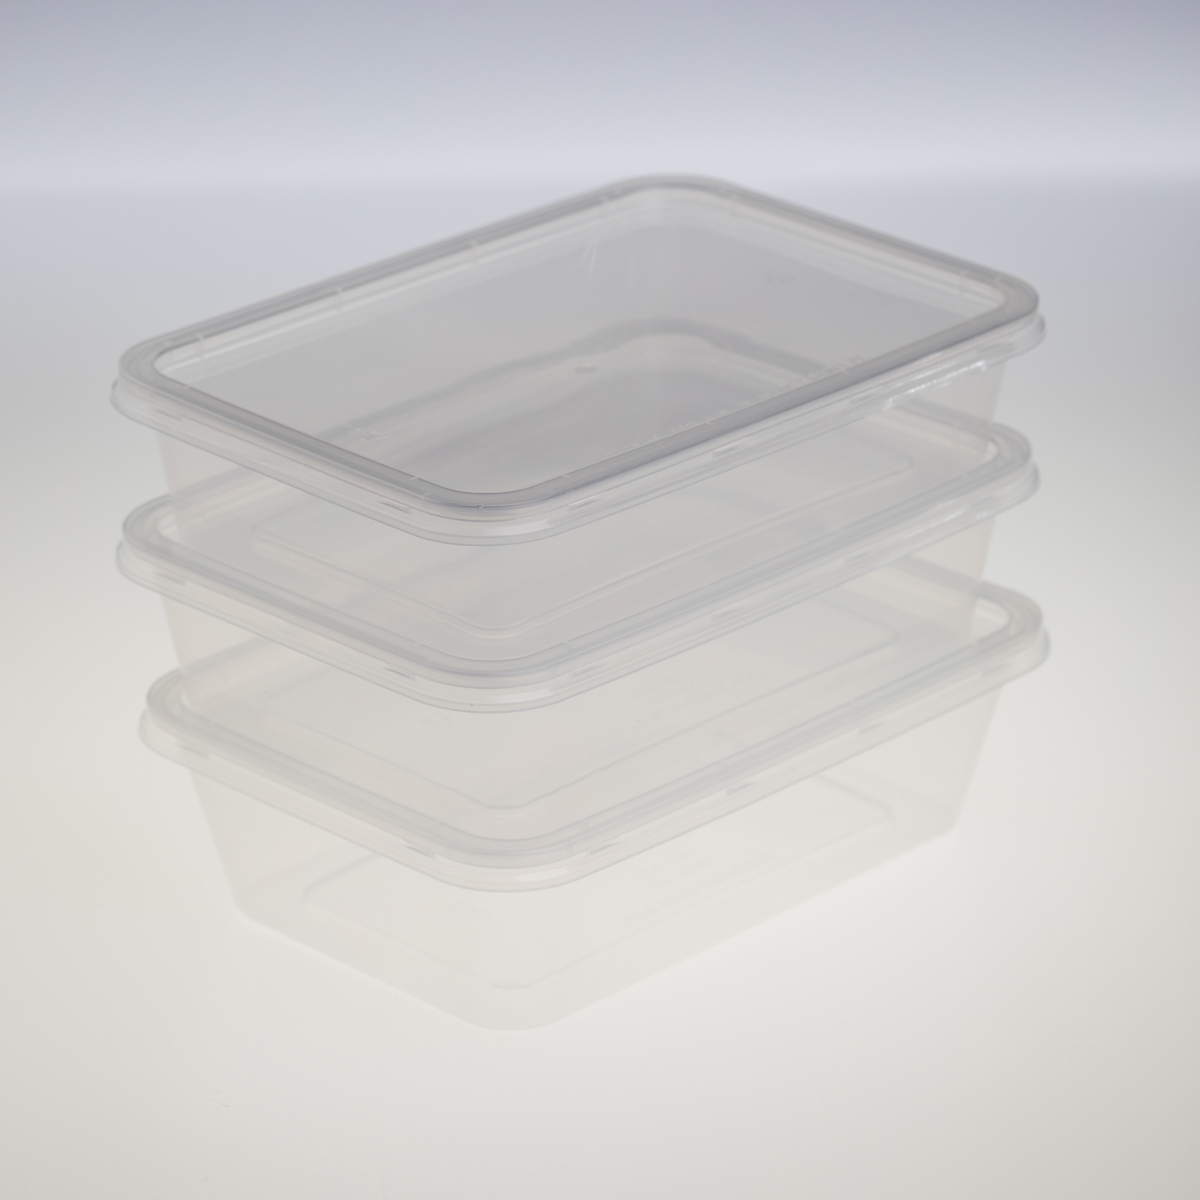 กล่องอาหารพลาสติกทรงสี่เหลี่ยม 1 ช่อง